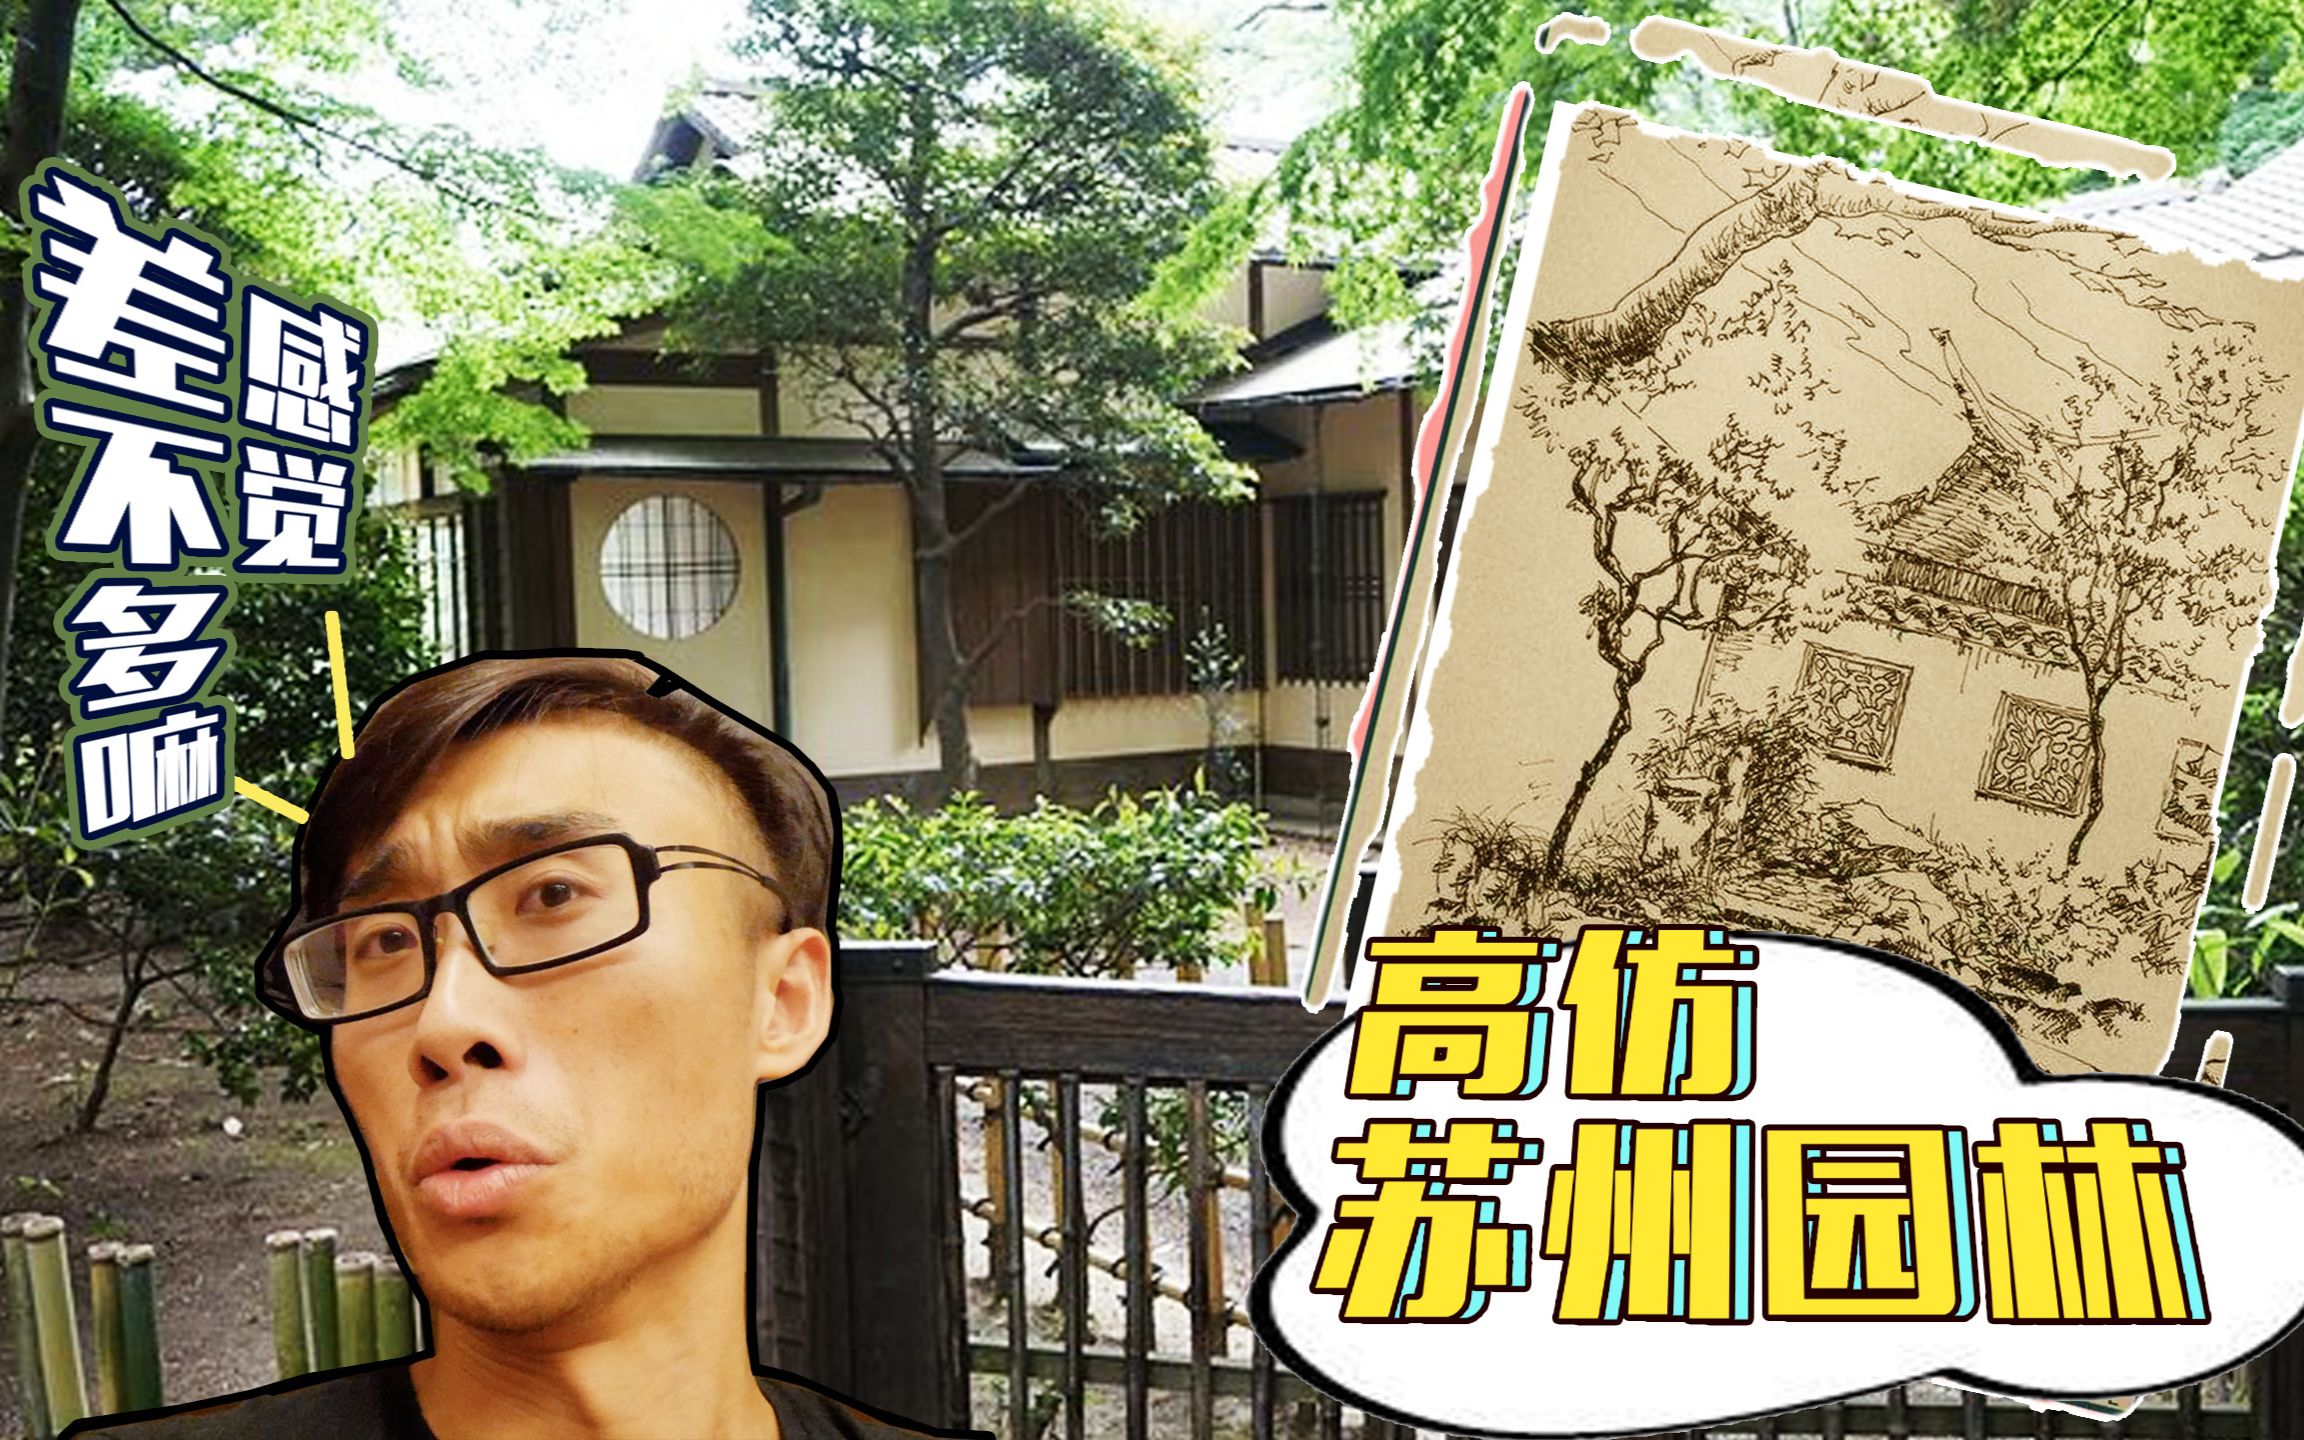 中国小伙参观日本天皇后花园,仿佛看到高仿版苏州园林?